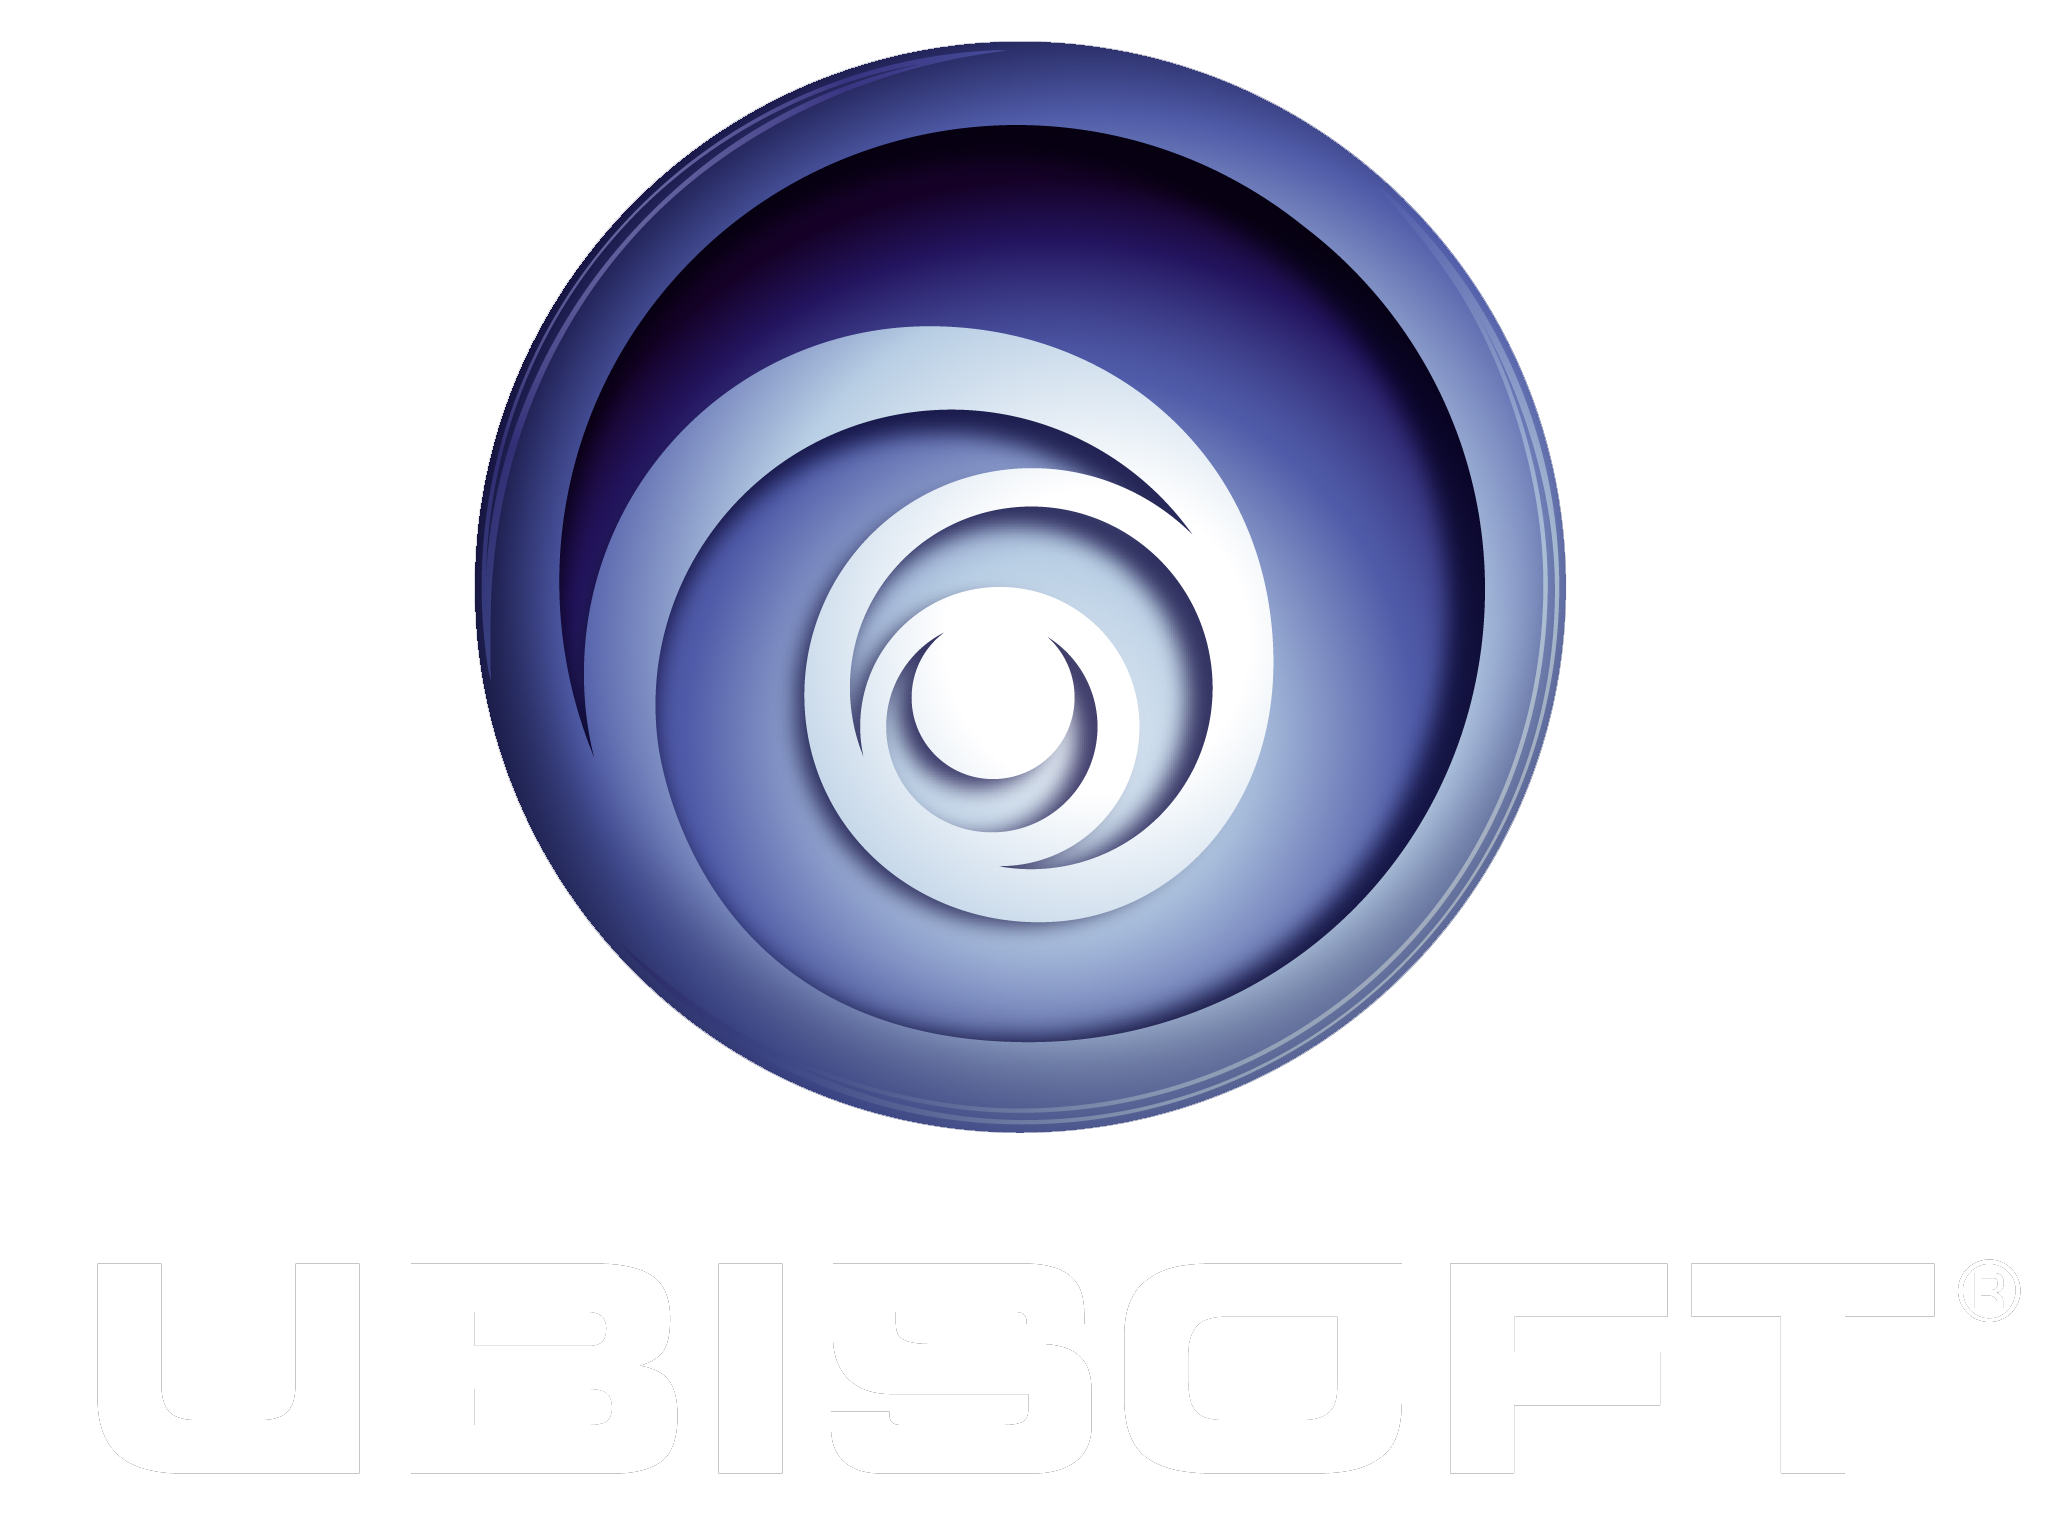 εικόνα για τον κατασκευαστή Ubisoft